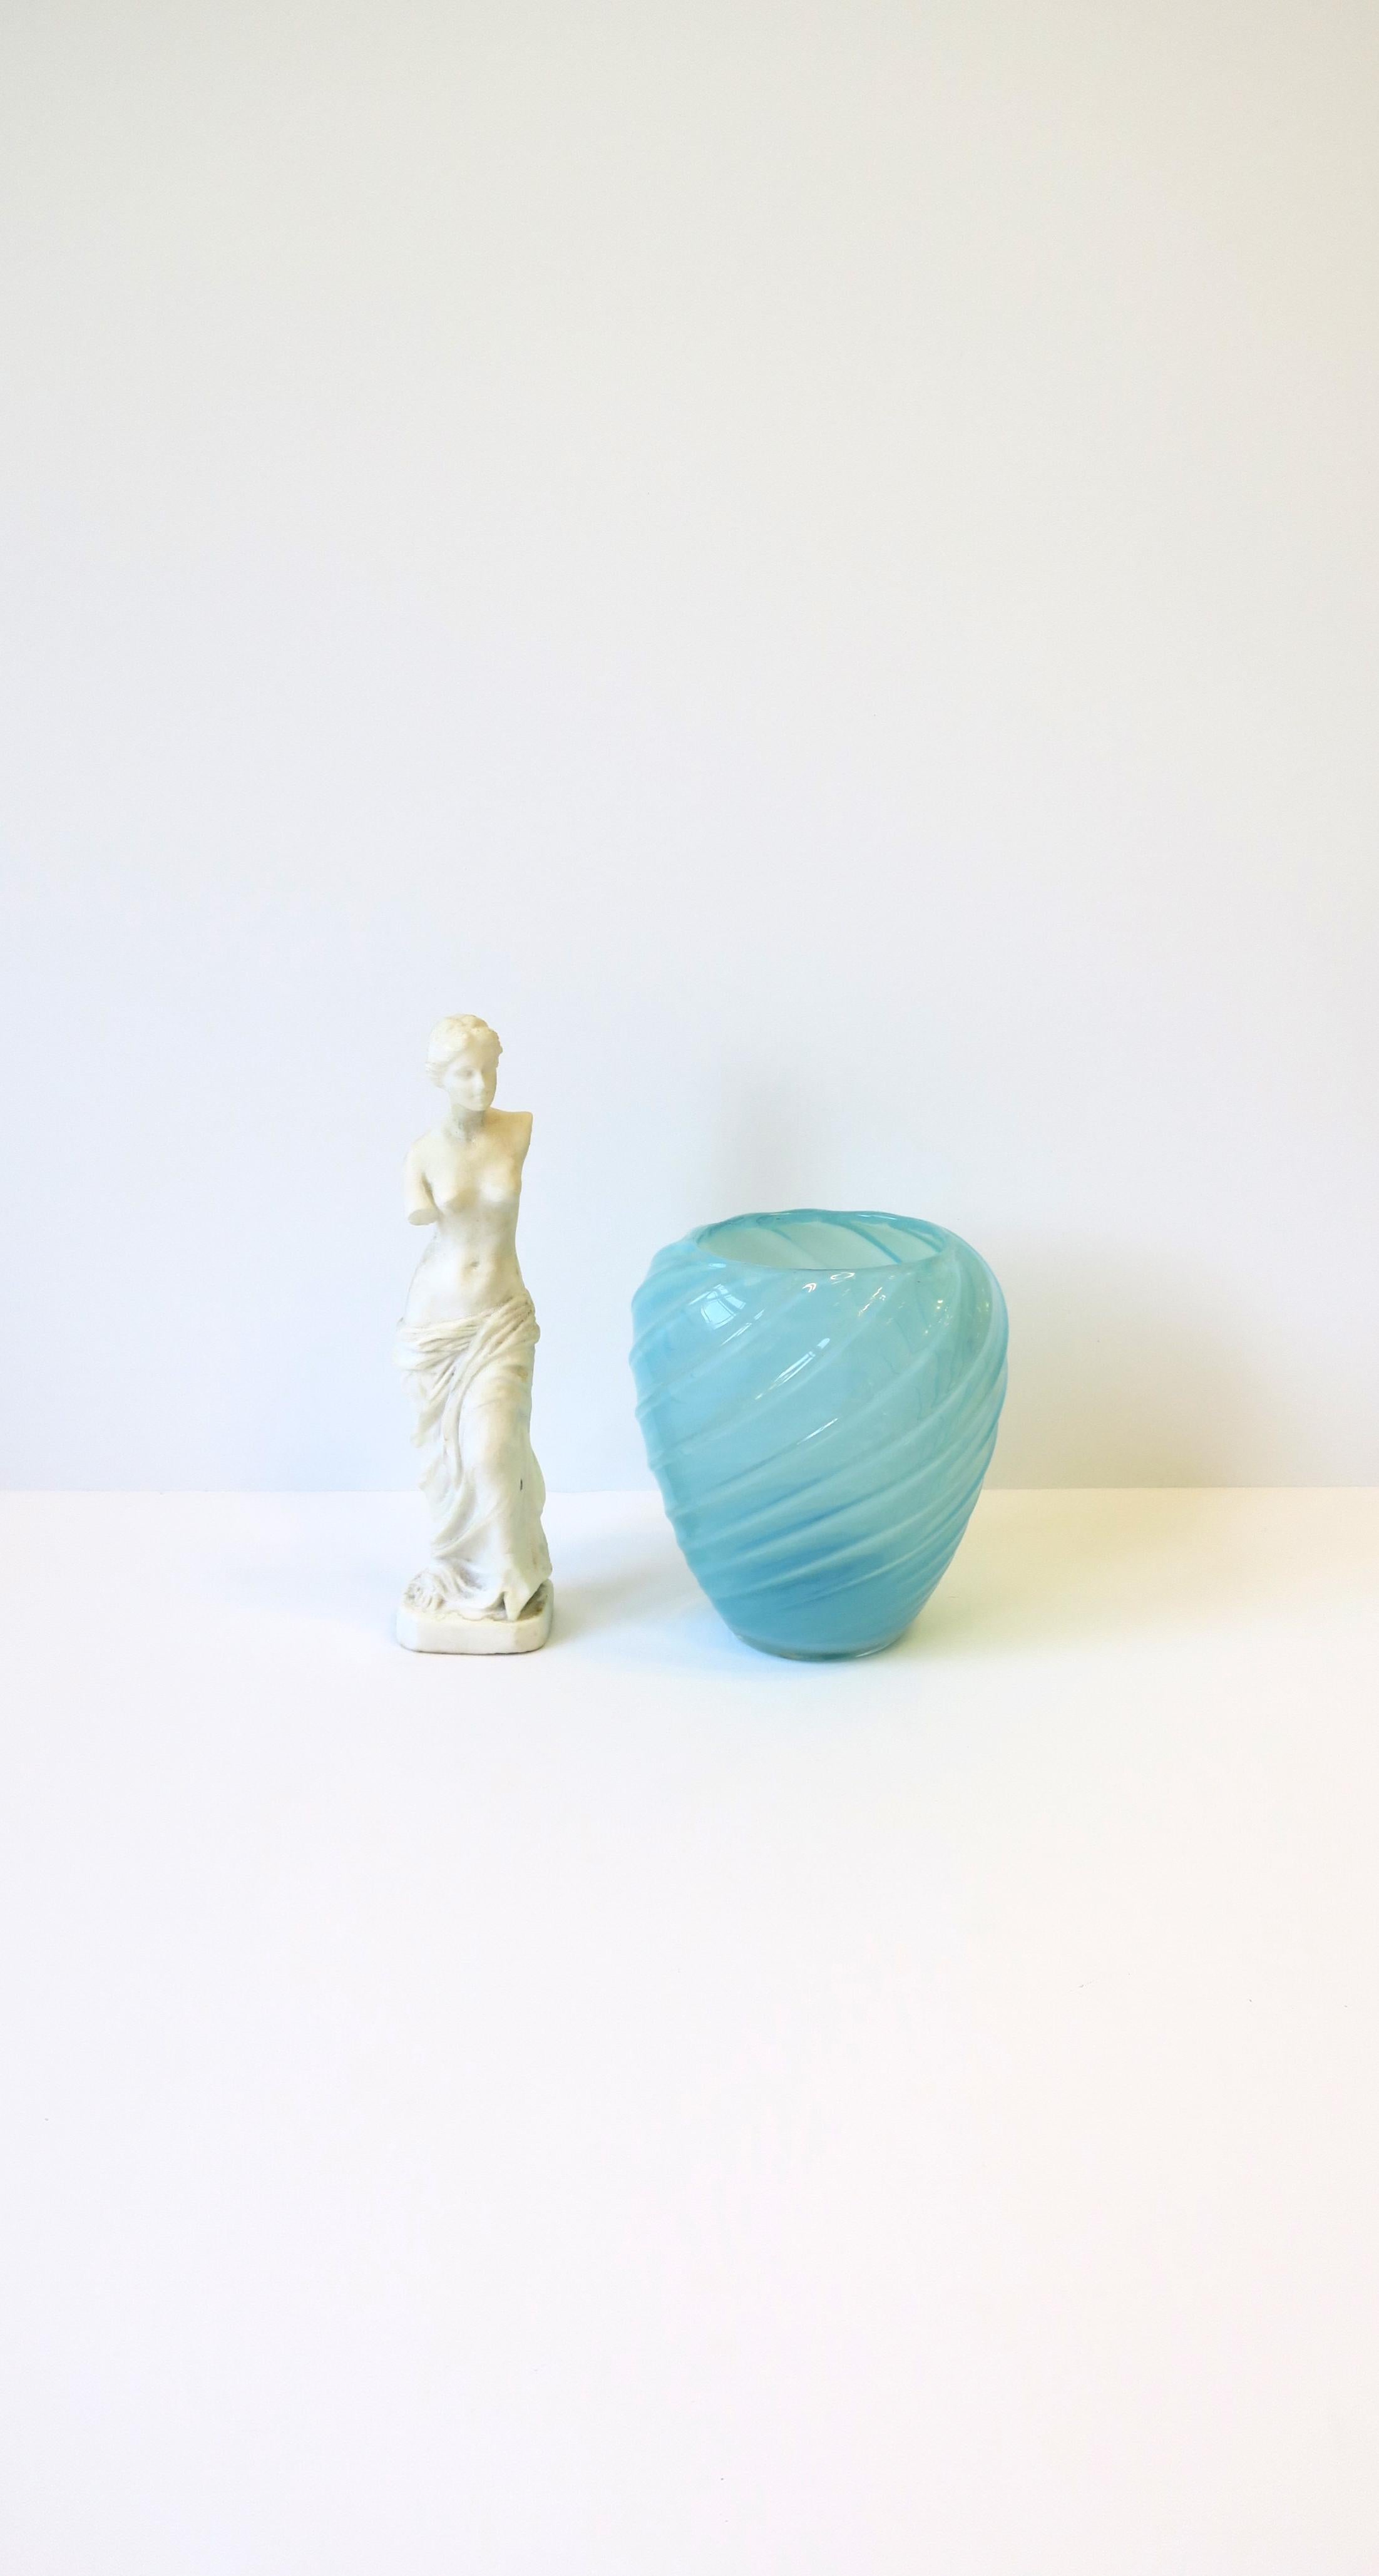 Italian Venus de Milo White Granite Marble Female Figurative Statue Sculpture For Sale